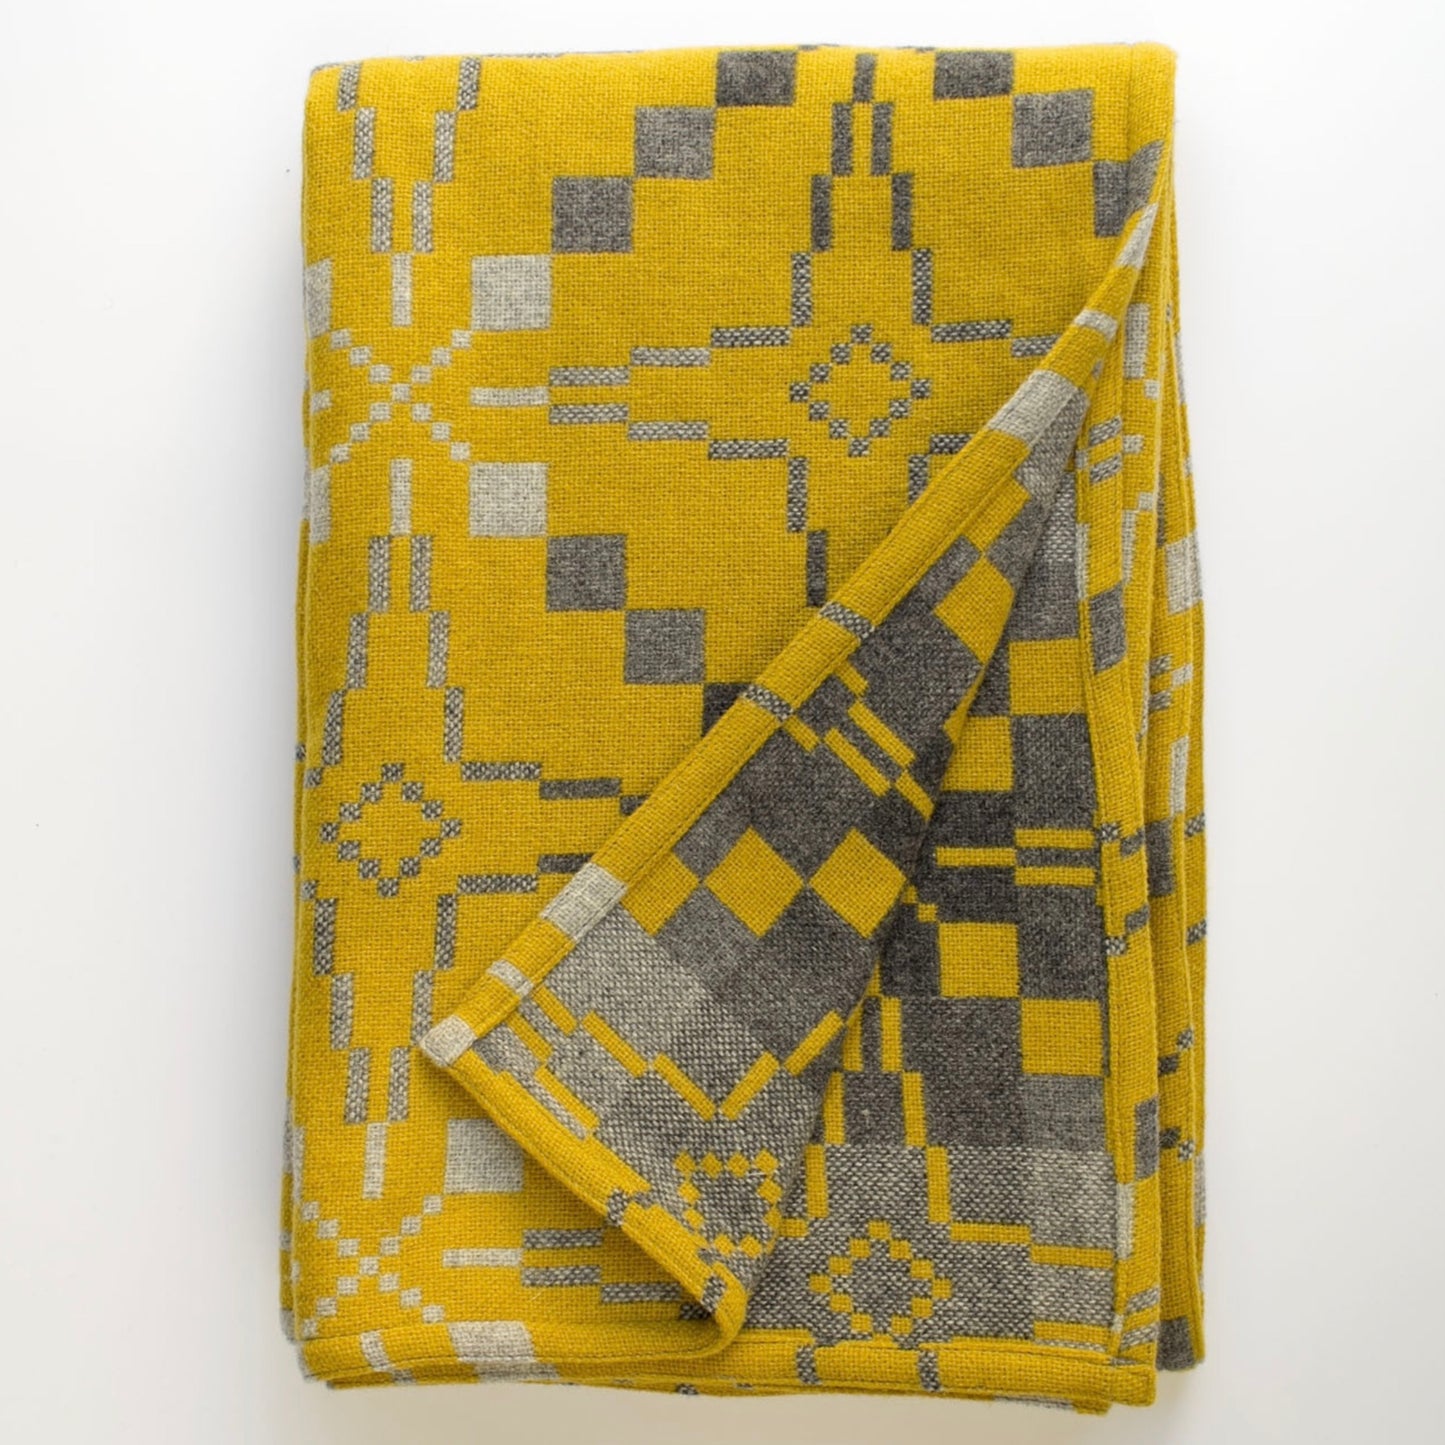 Melin Tregwynt Welsh blanket 'Vintage Star', yellow & grey